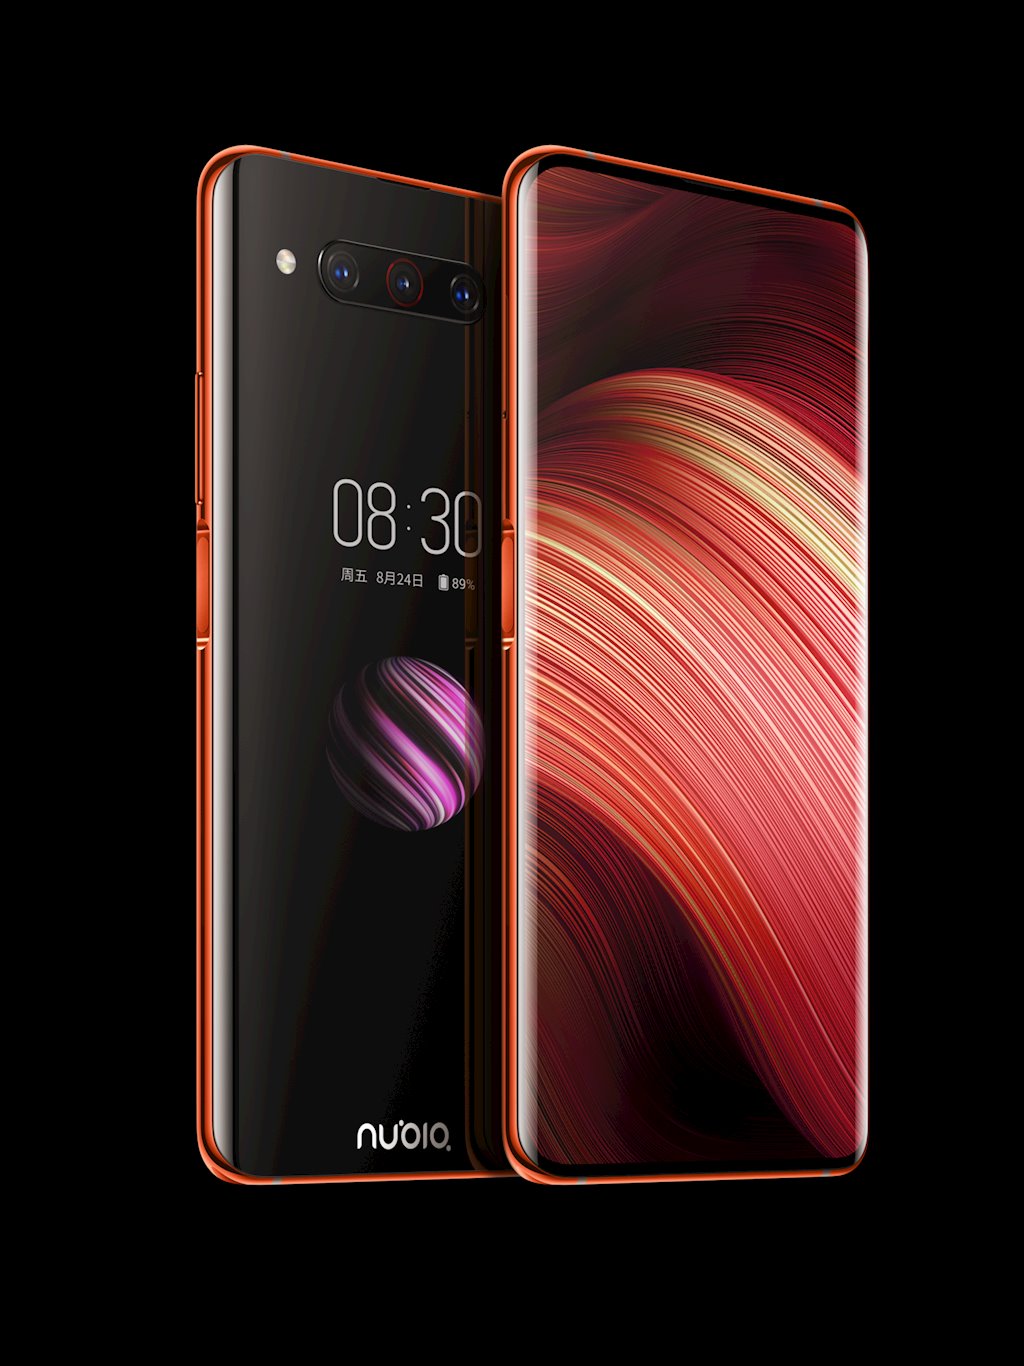 Giới thiệu Nubia Z20 với hai màn hình, Snapdragon 855 Plus và camera 48MP